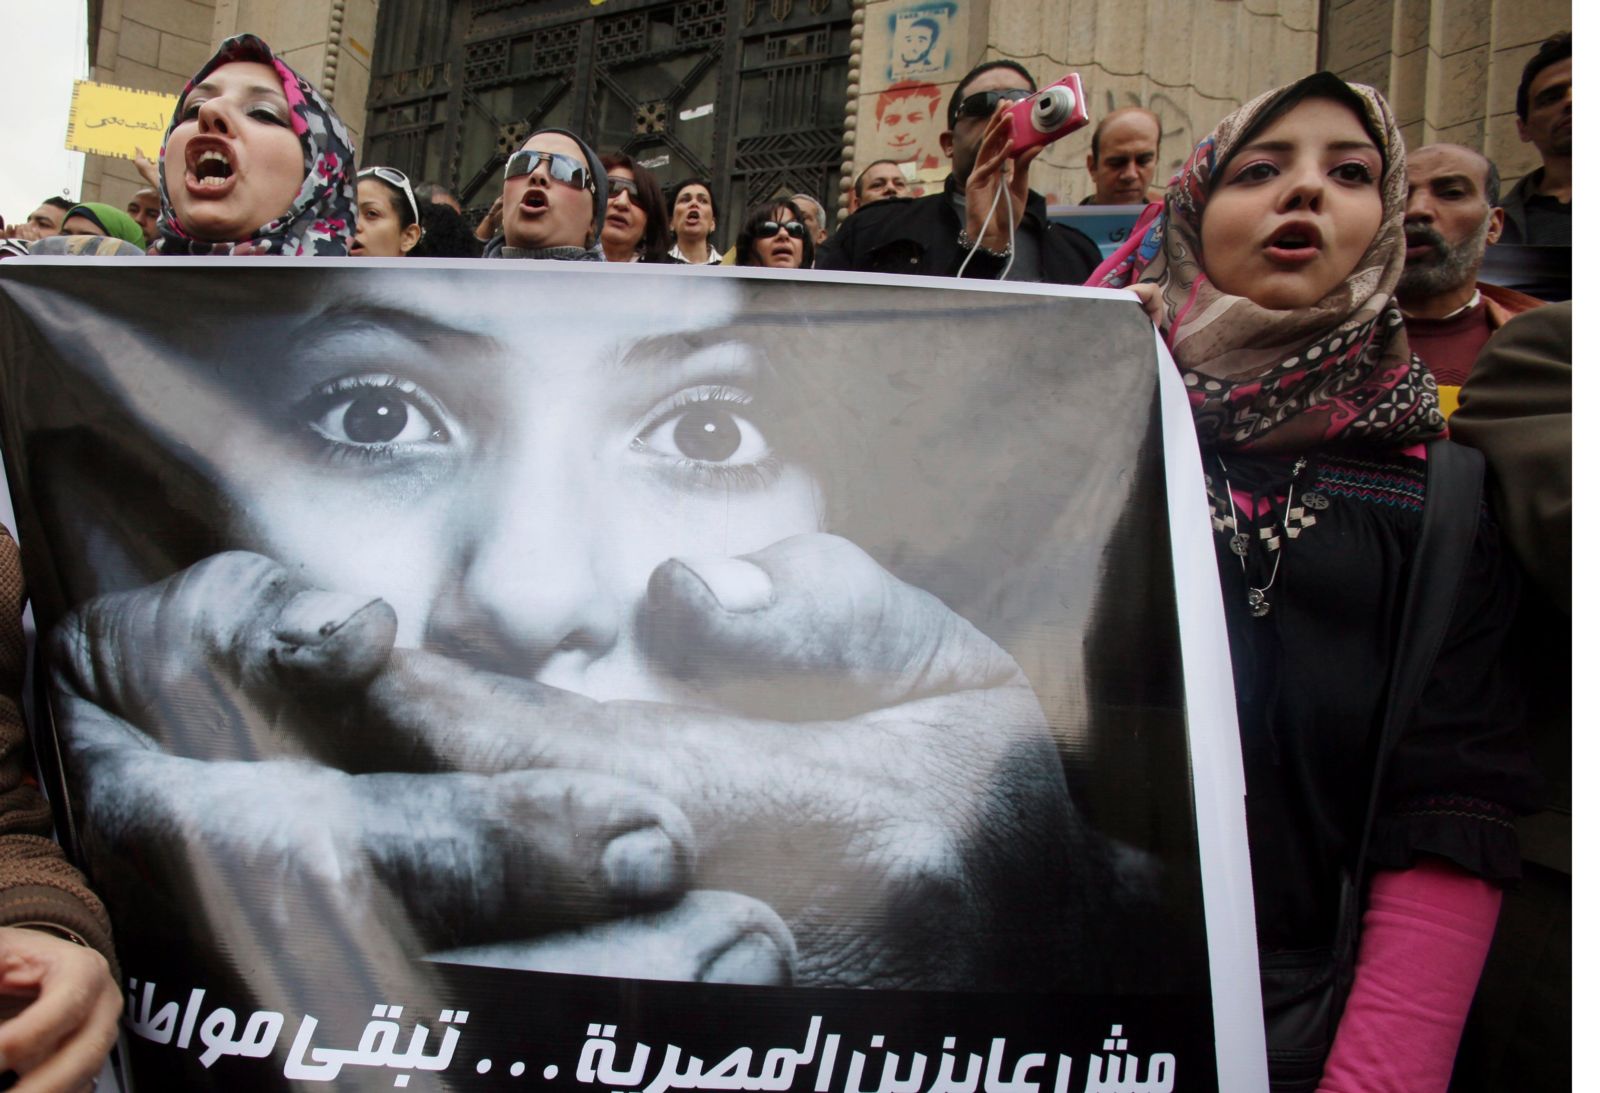 المقاومة أم الفرار: استجابة المنظمات الحقوقية المصرية لحملات القمع